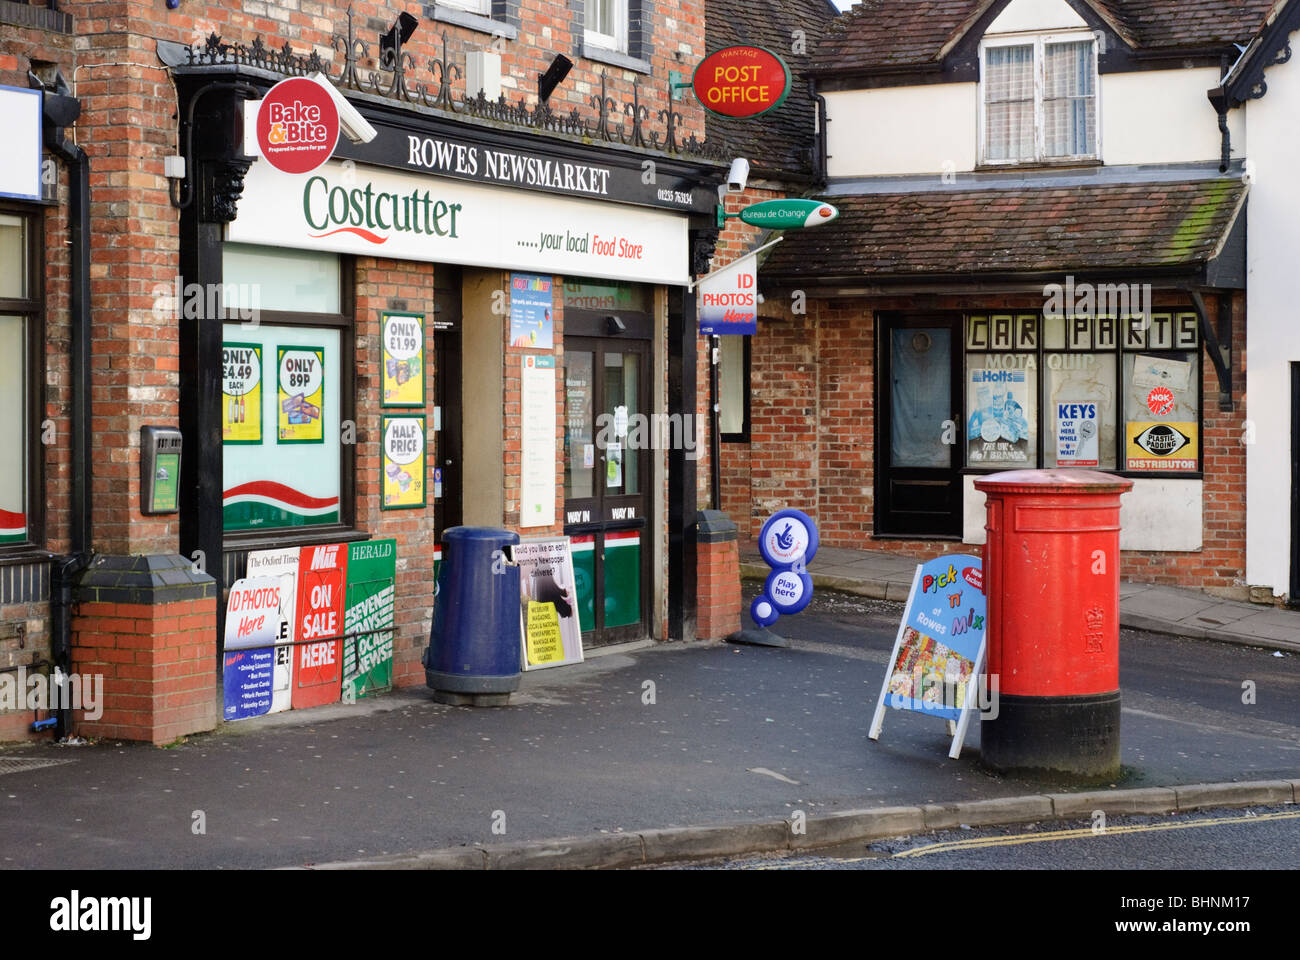 Dans The Newsmarket Rowes, Wantage Oxfordshire, Angleterre, Royaume-Uni est un magasin de proximité avec un bureau de poste situé à l'intérieur. Banque D'Images